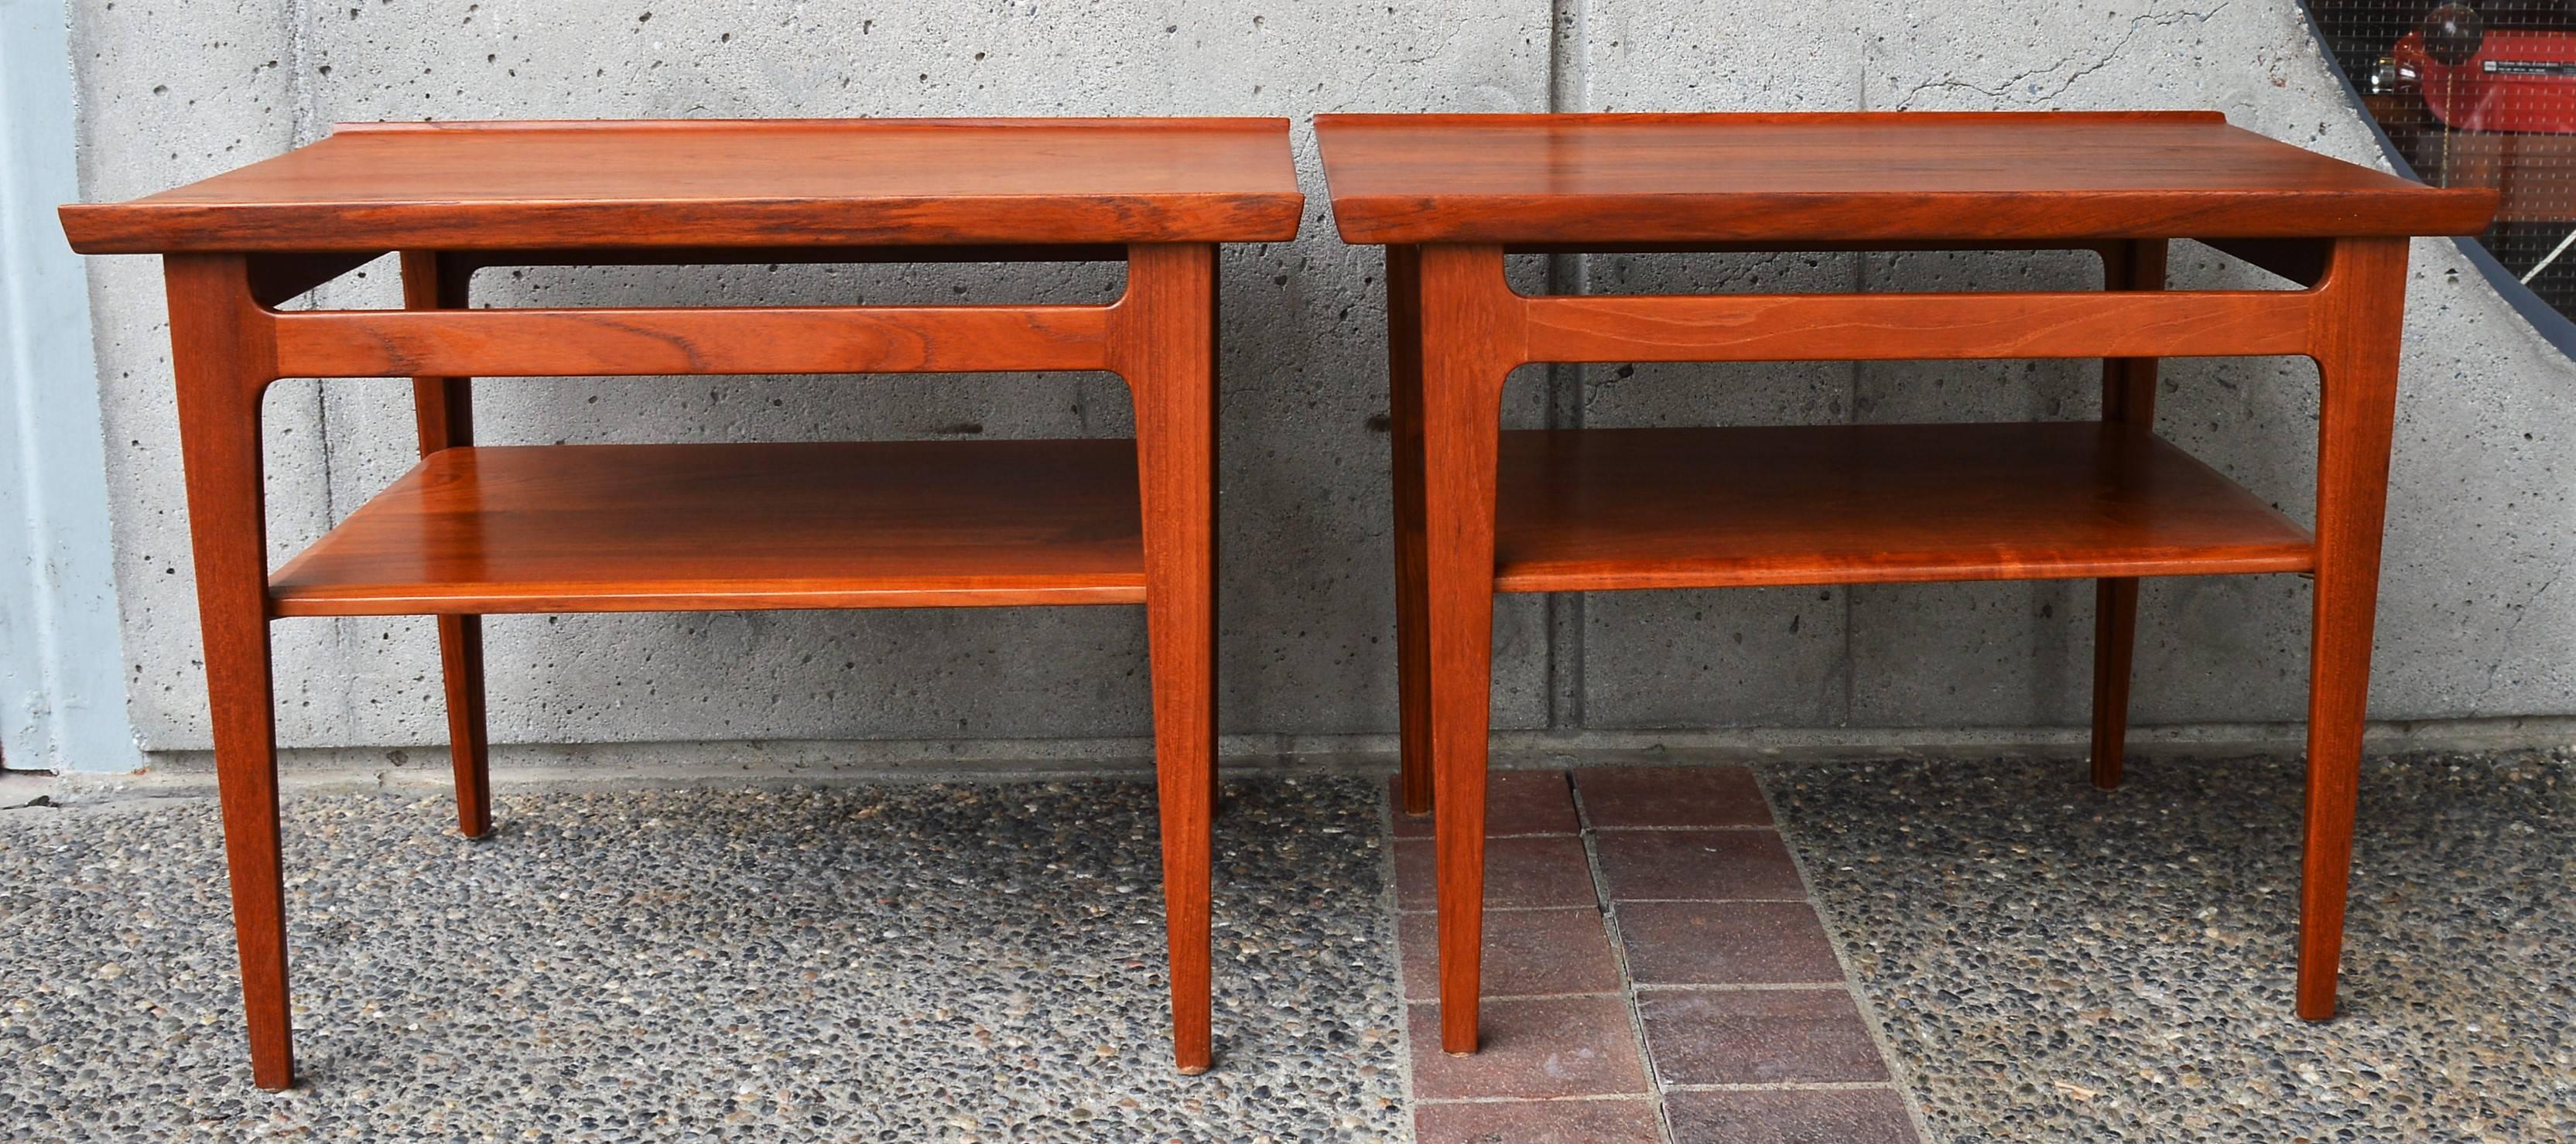 Danish Pair of Finn Juhl Solid Teak Side Tables with Shelves Model 535 for France & Son